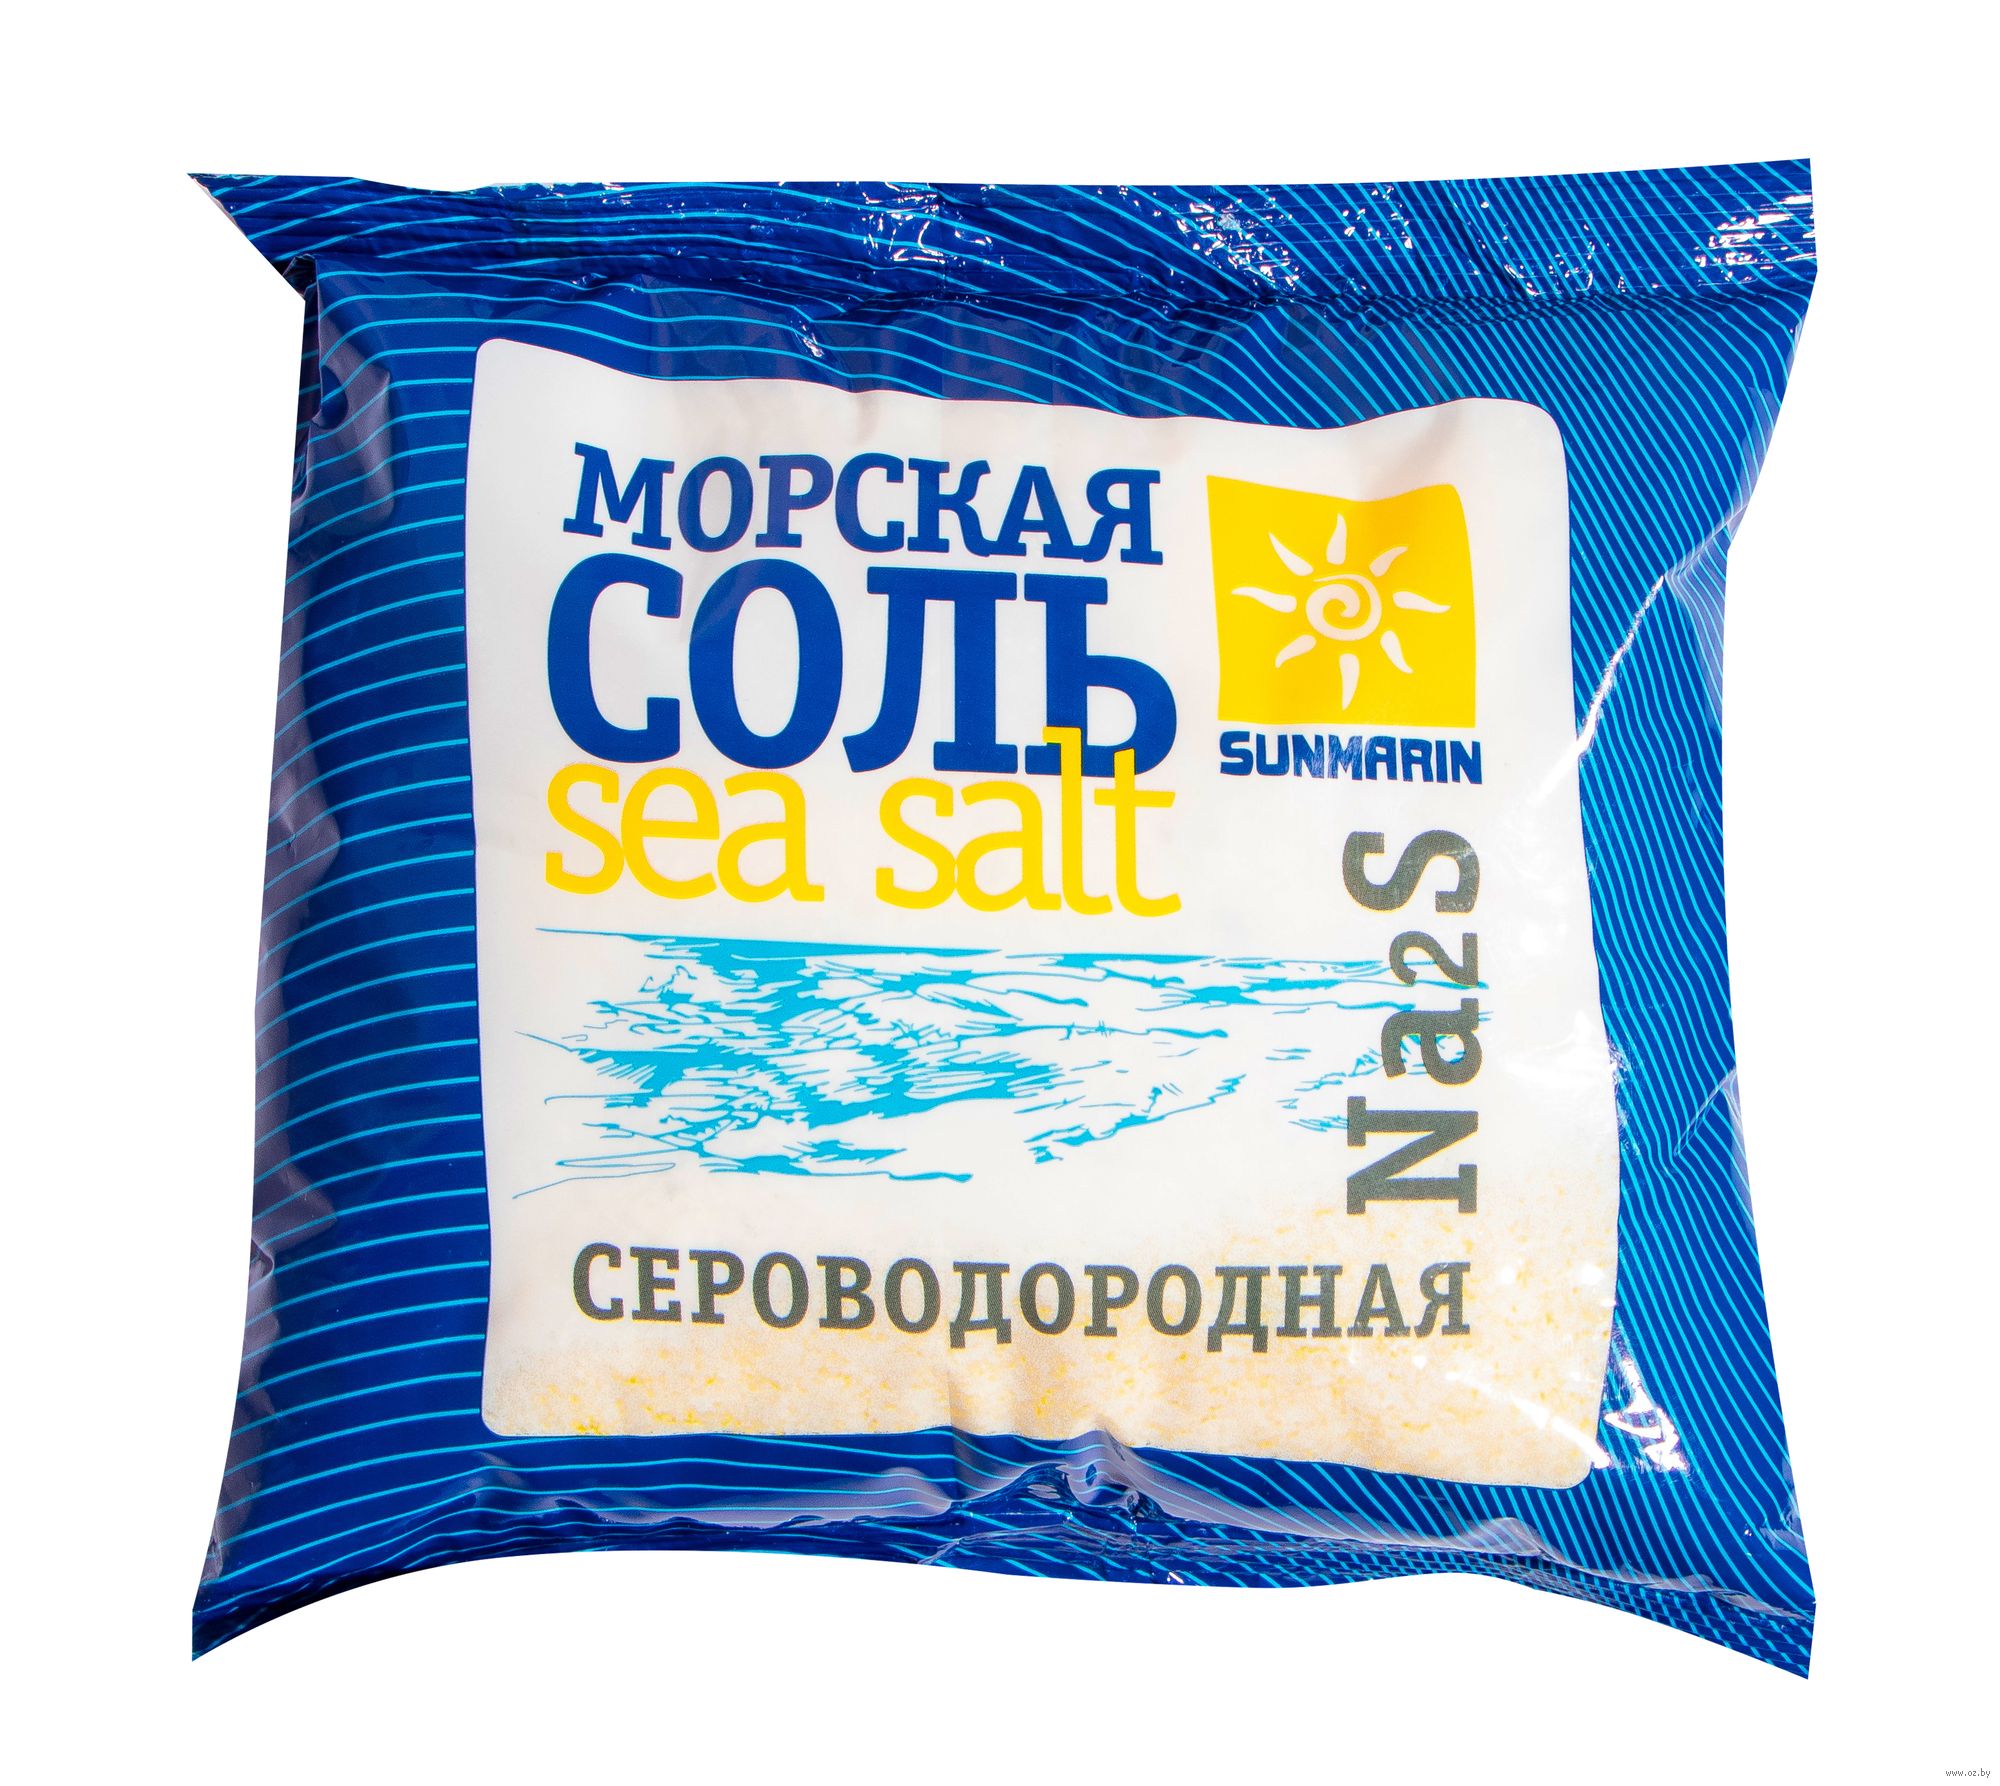 Купить соль для ванн минск цитаты смешные про наркотики